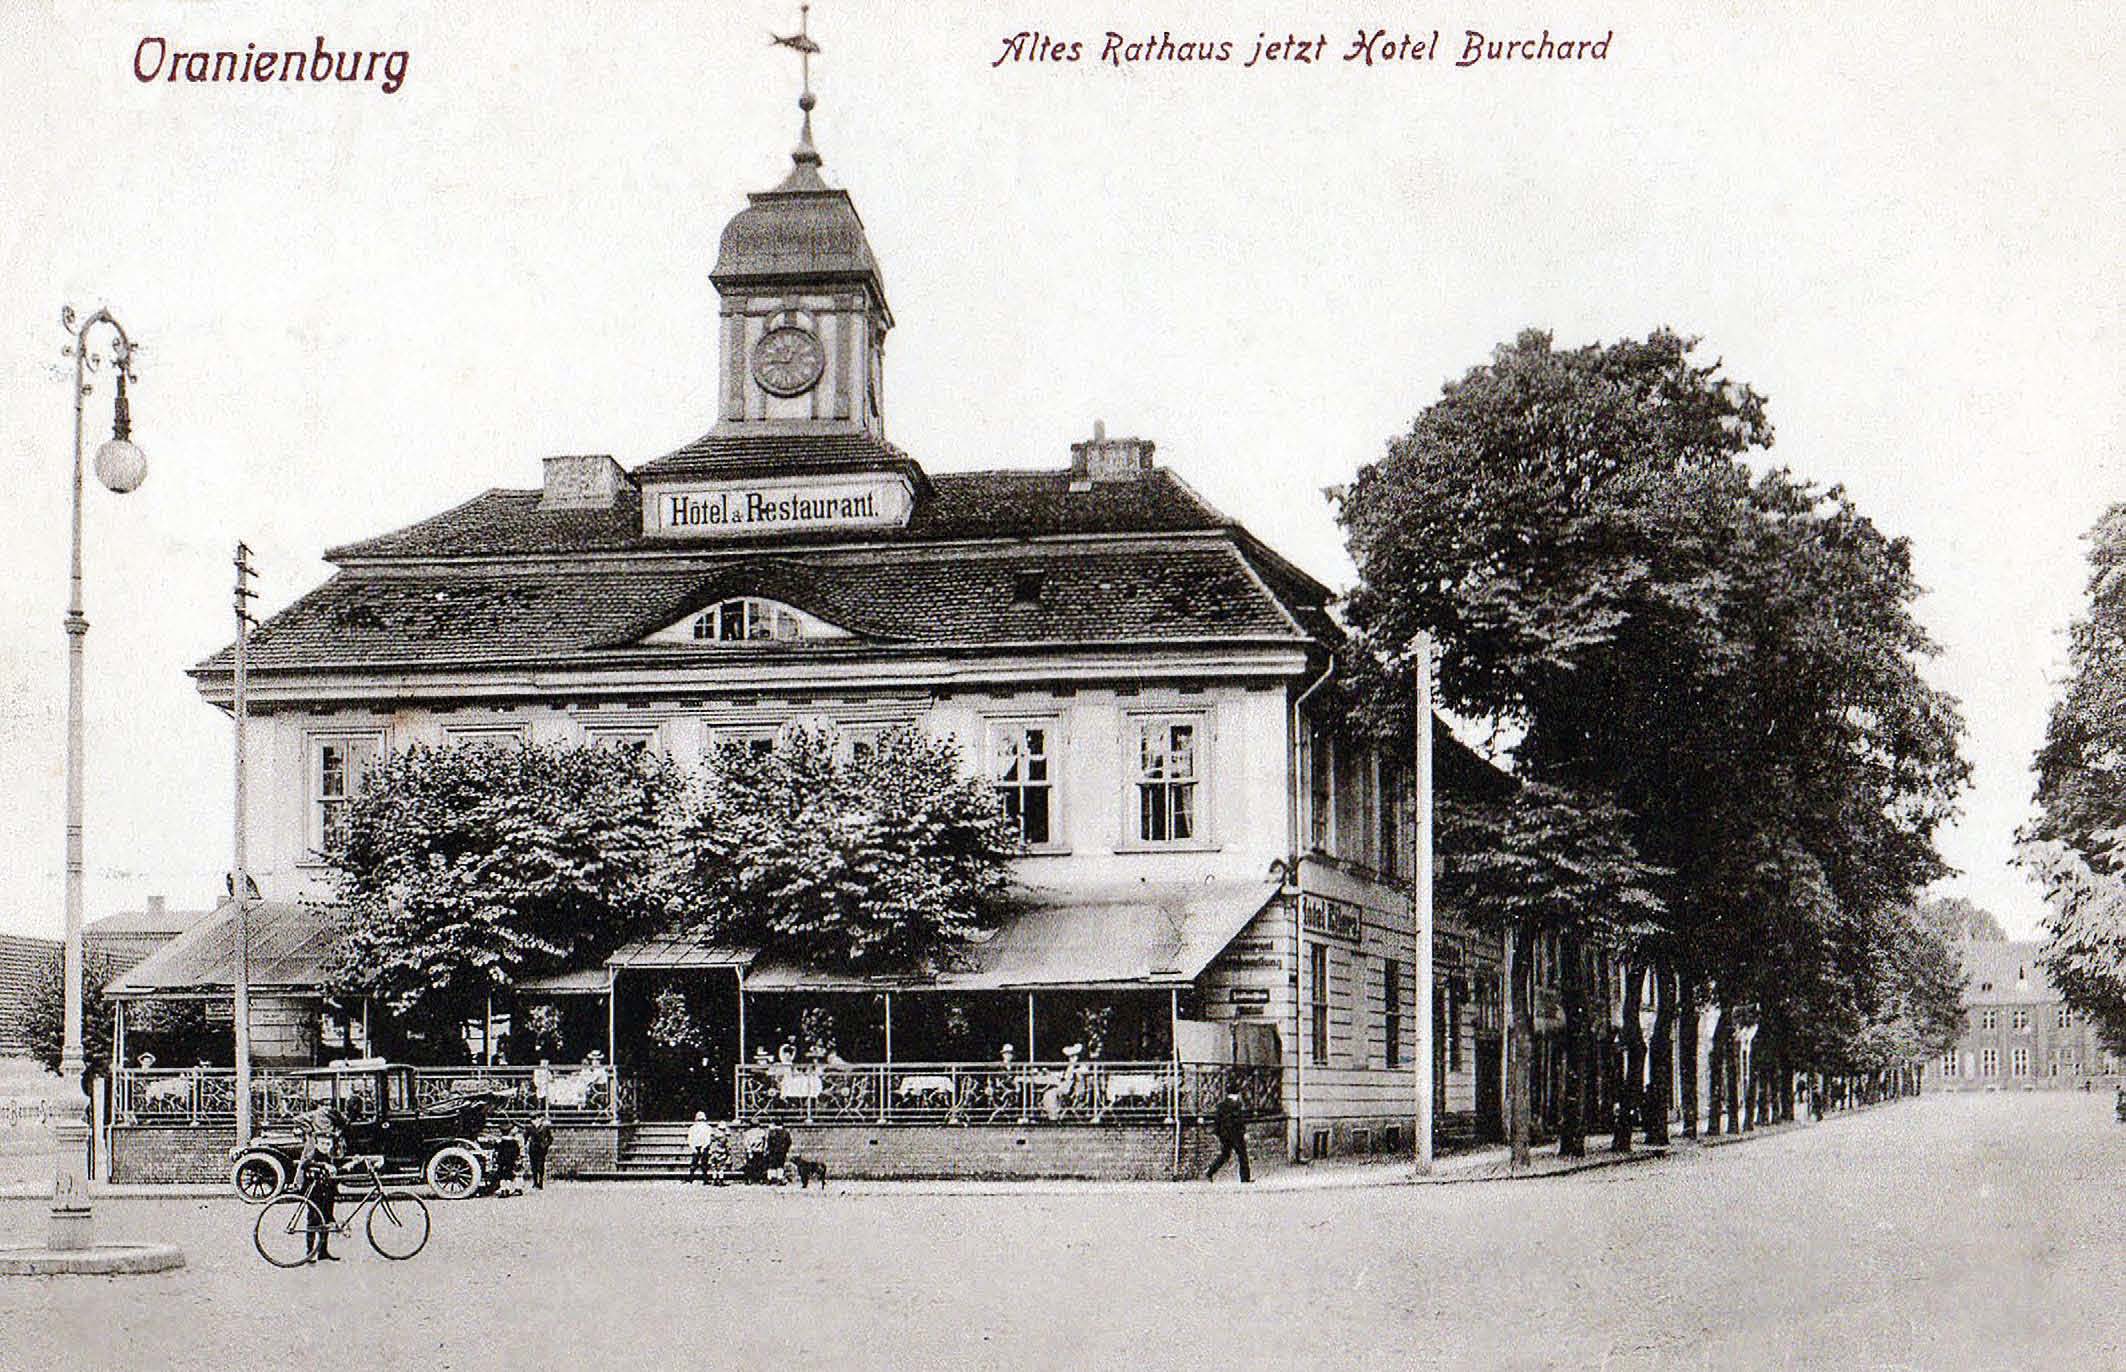 Postkarte mit einem Foto des „Hotel Eilers“ (um 1900, Quelle: Kreismuseum Oberhavel)